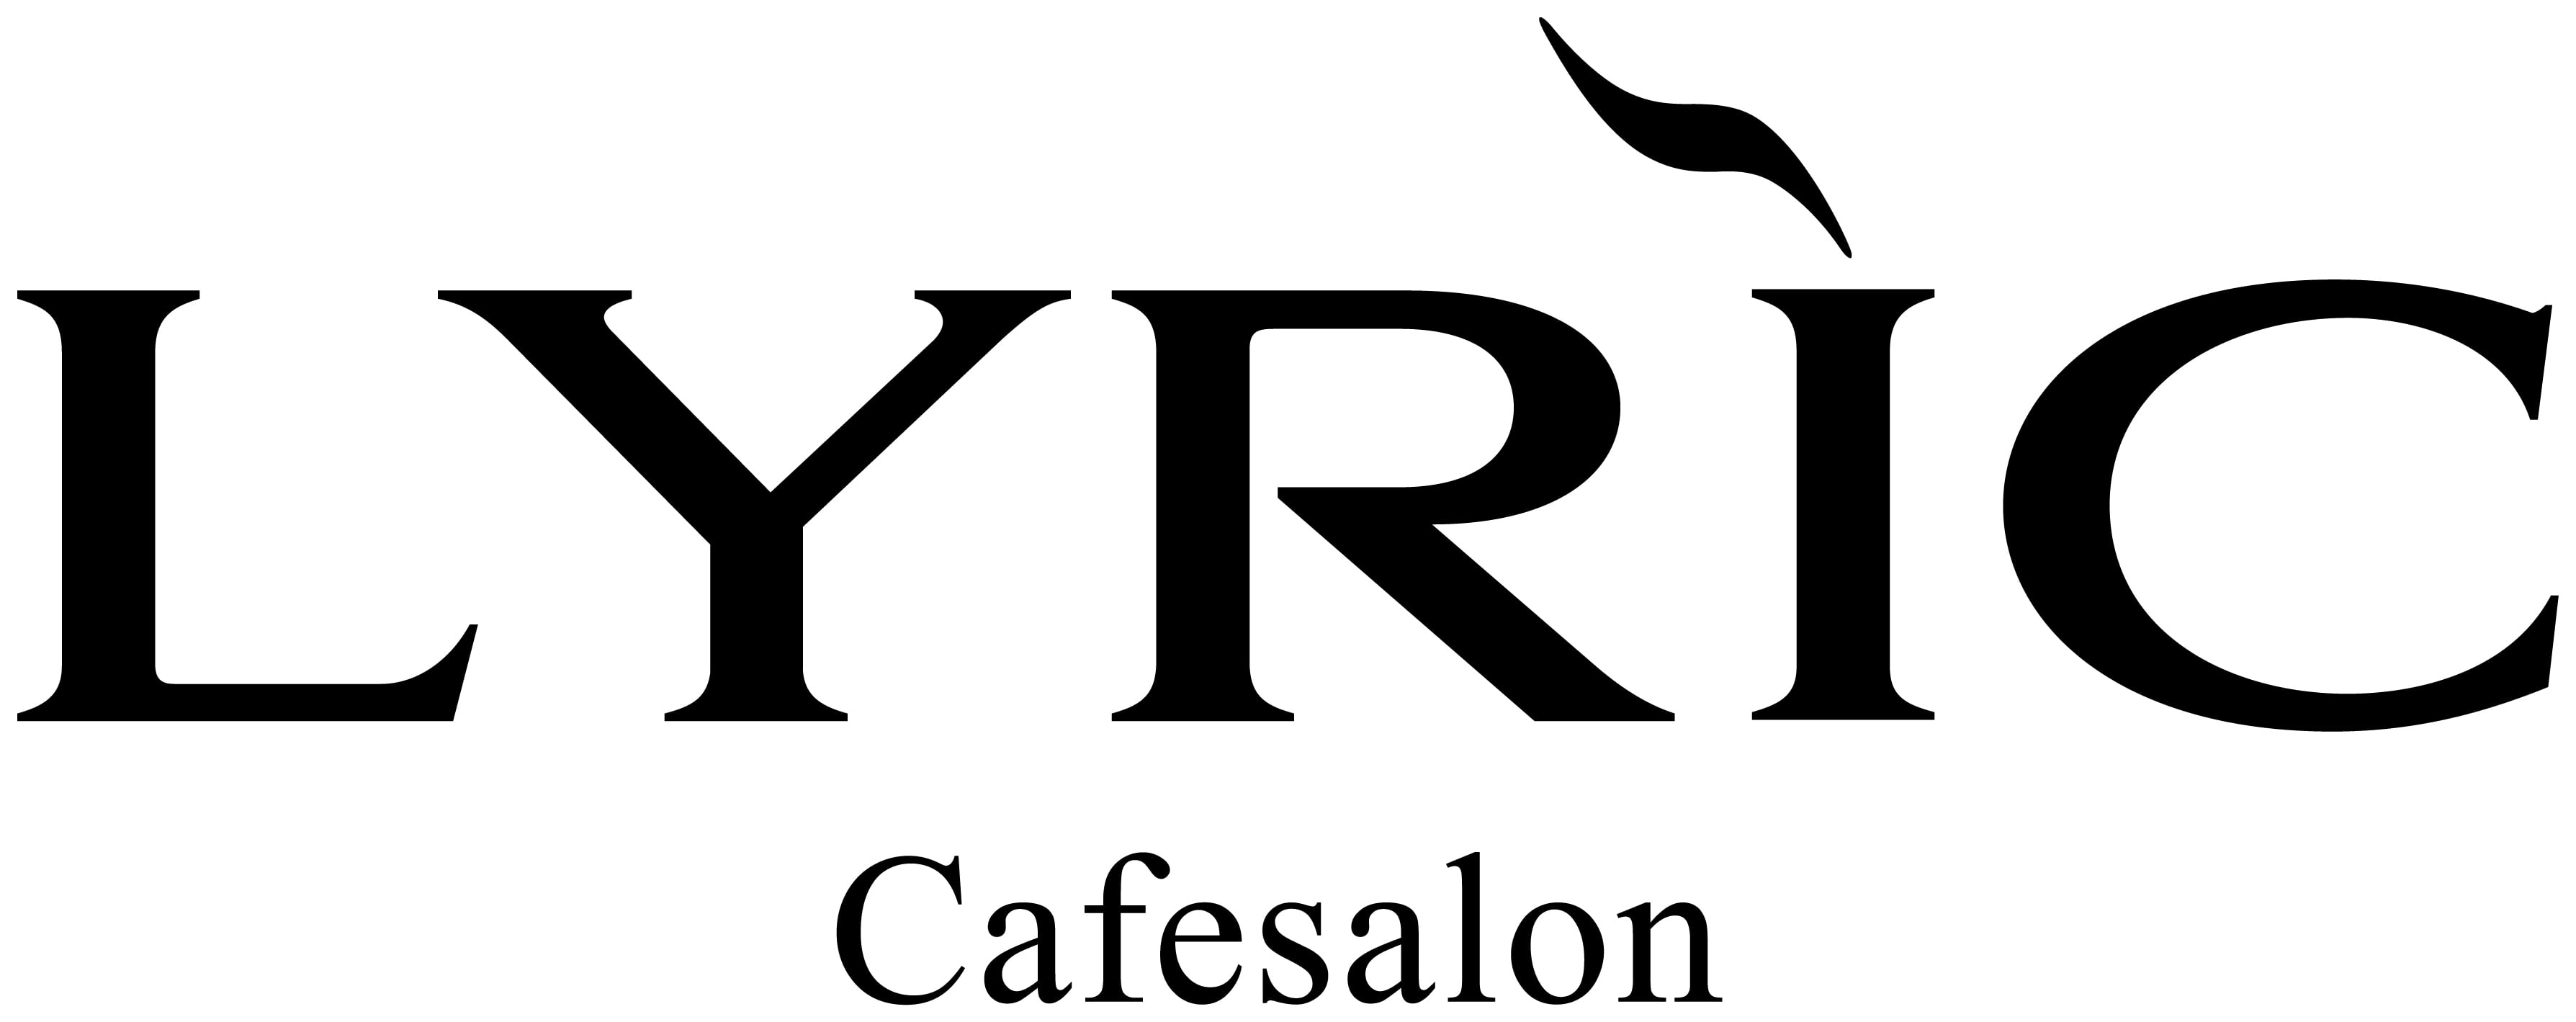 Cafesalon LYRIC